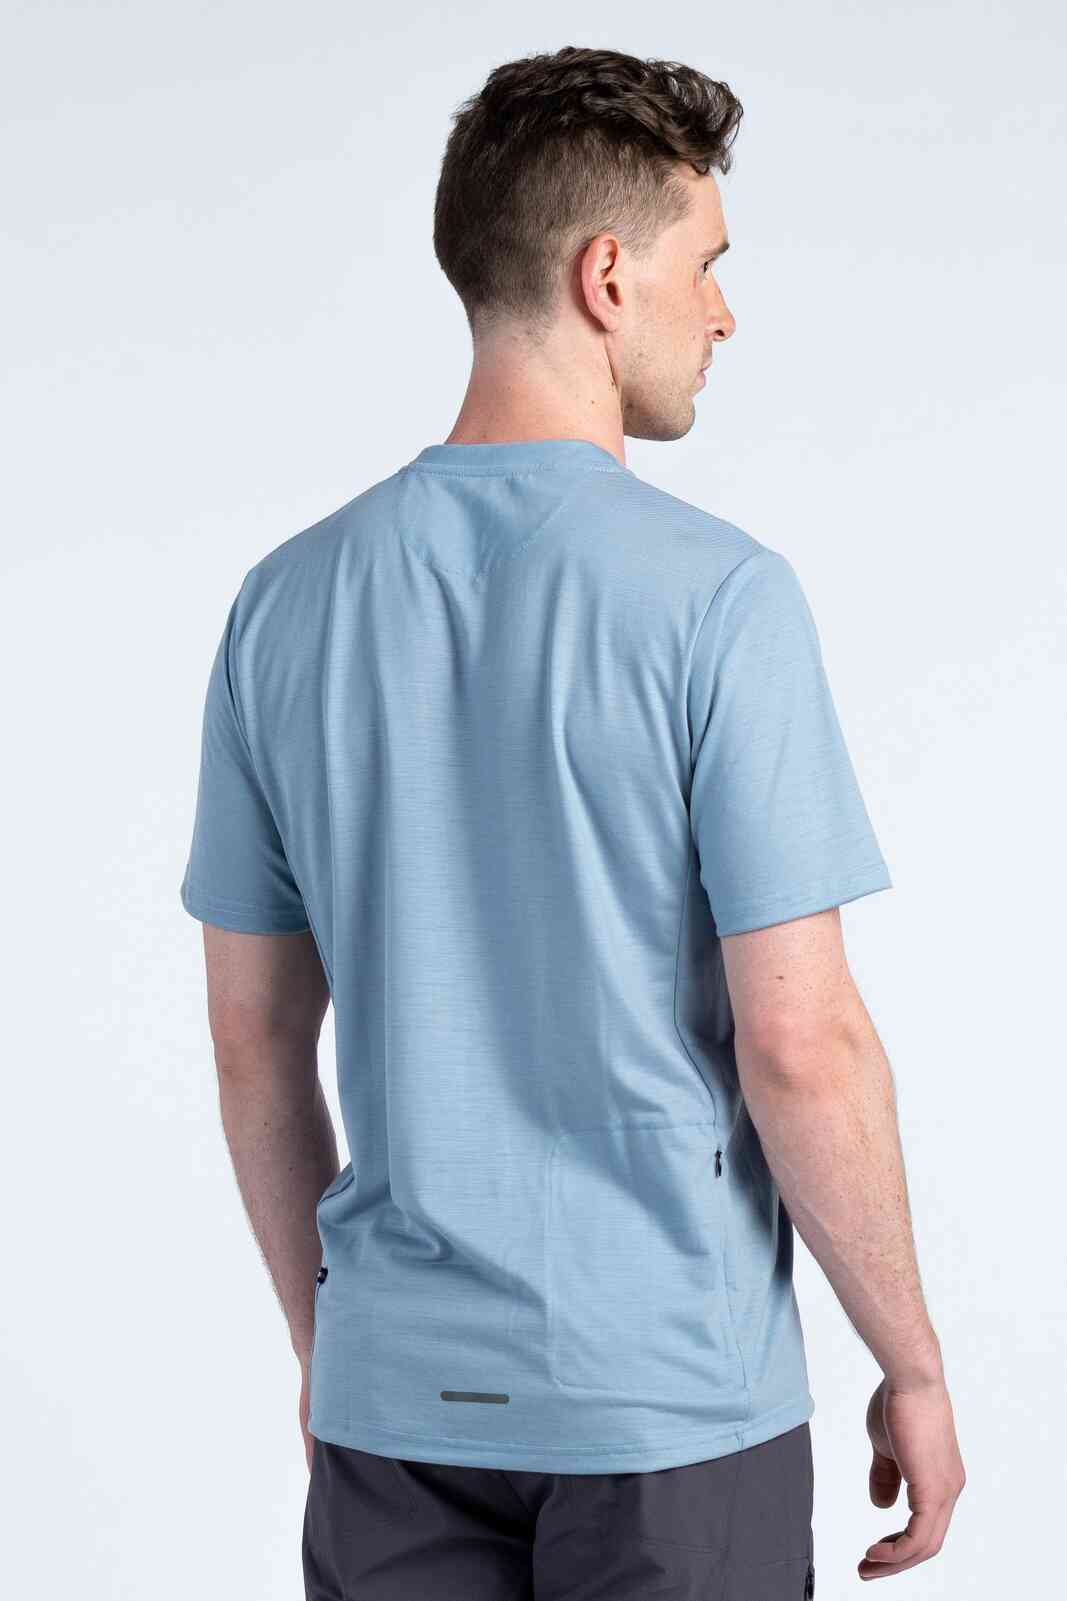 Light Blue MTB Shirt for Men - Back View